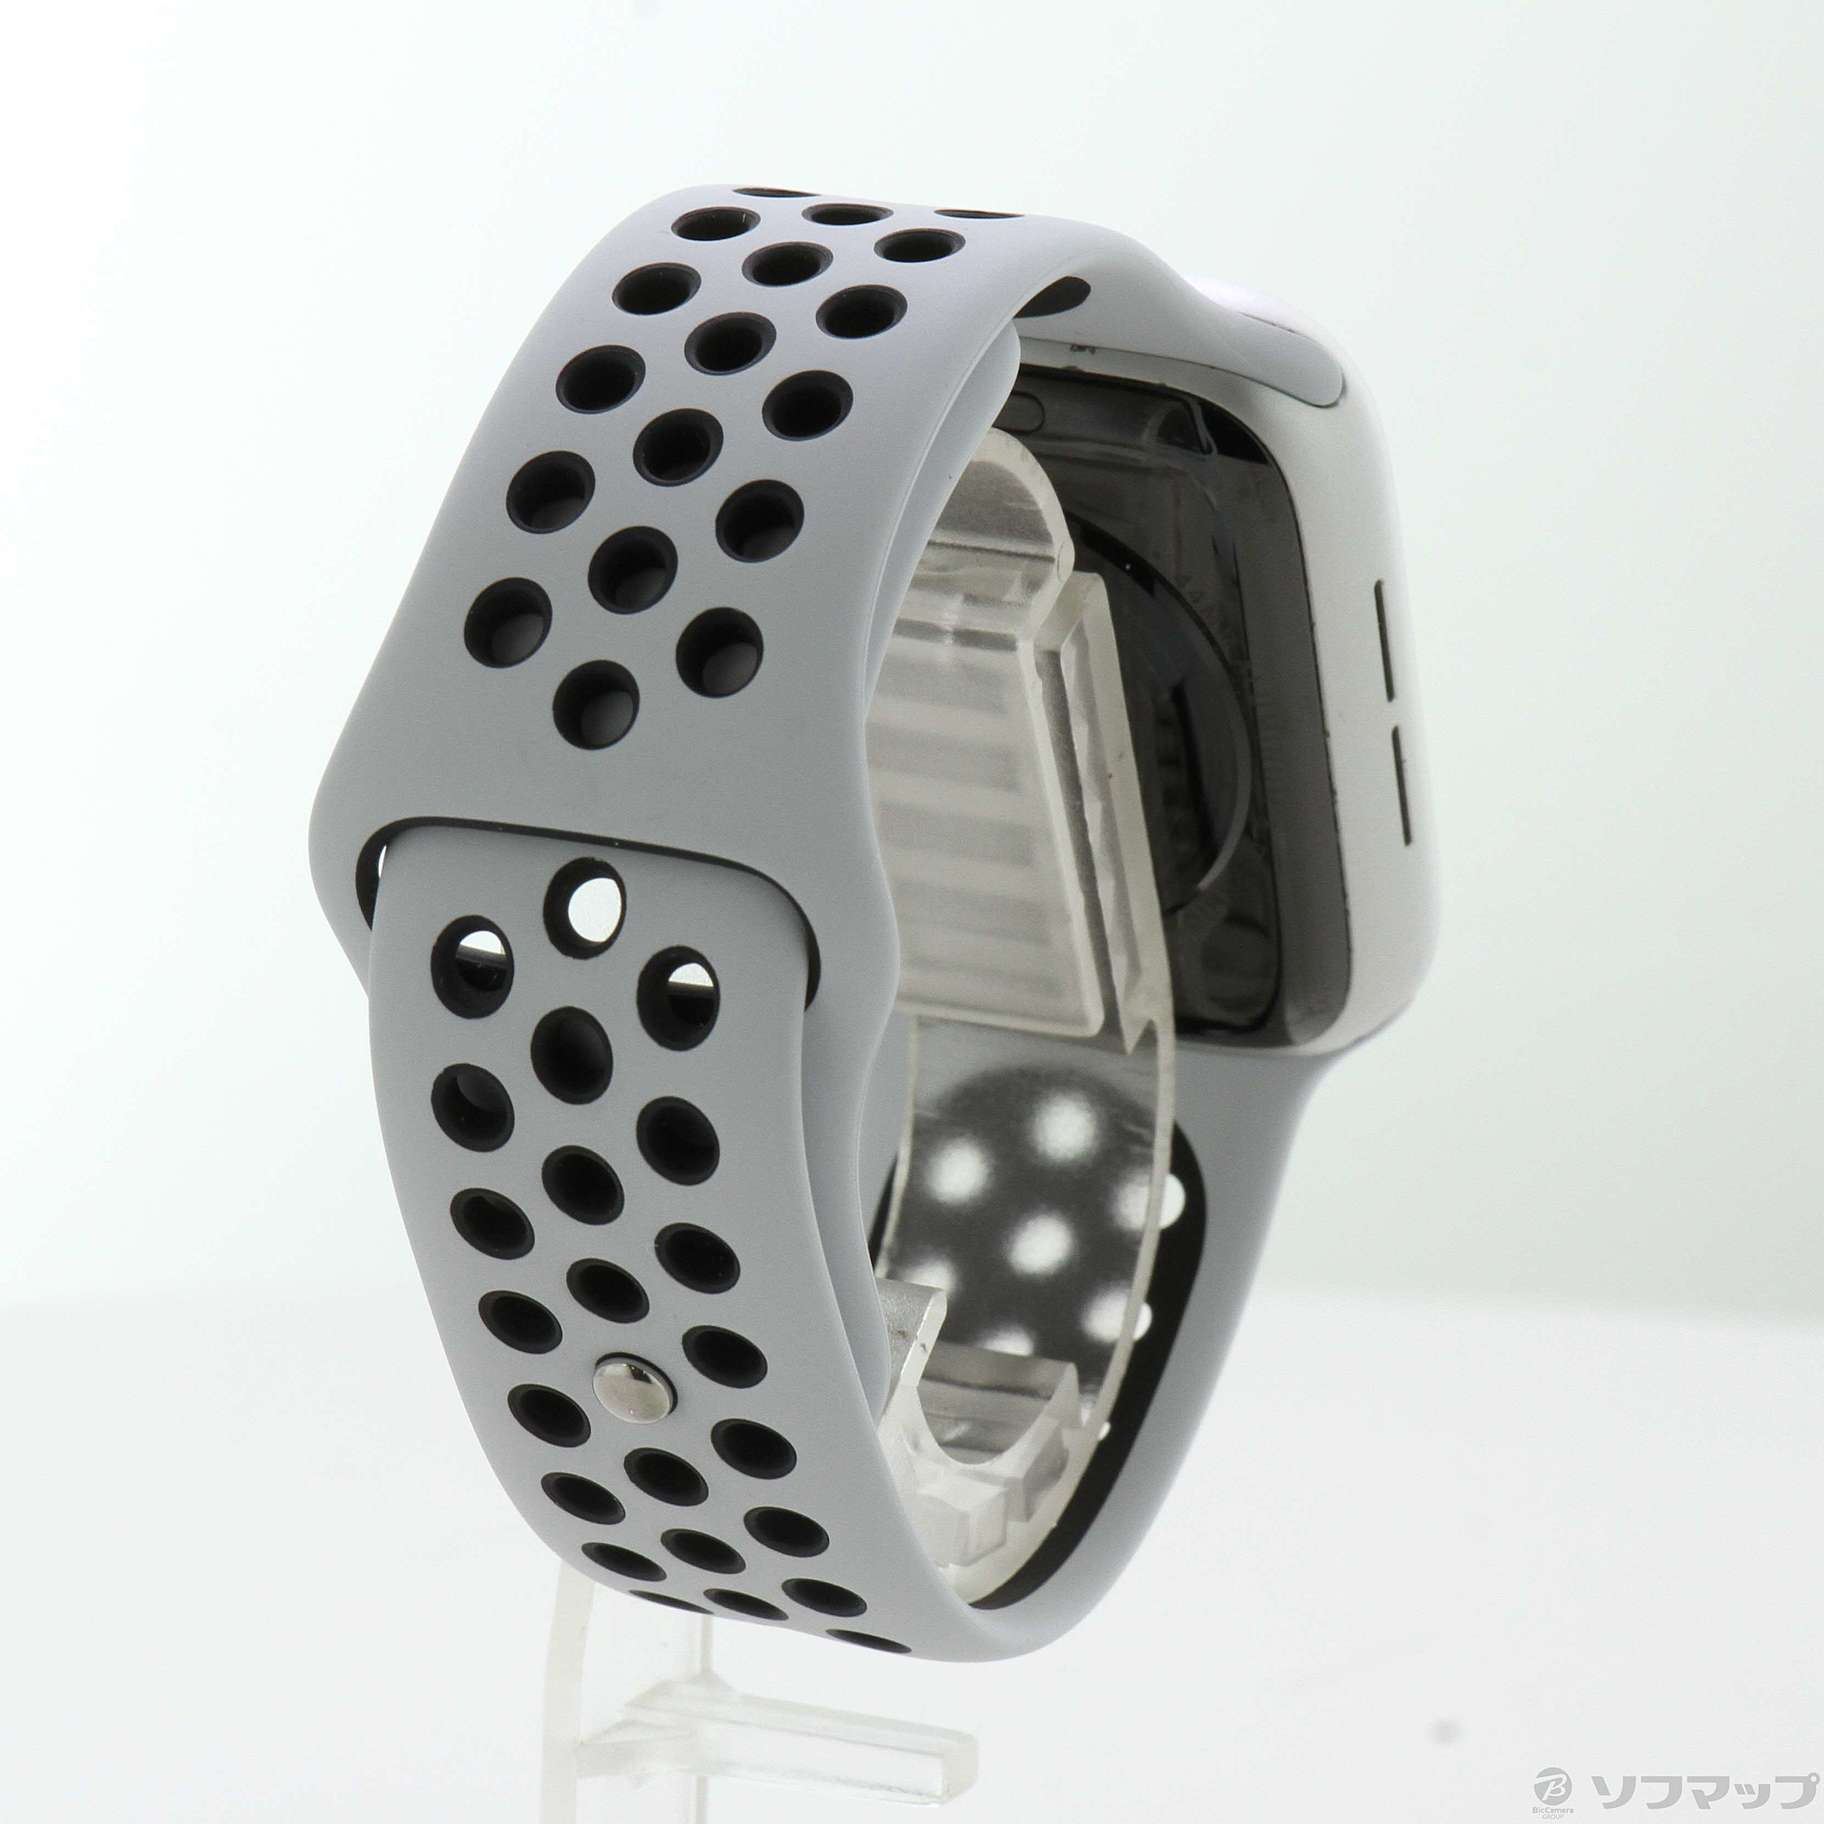 Apple Watch SE 第1世代 Nike GPS 44mm シルバーアルミニウムケース ピュアプラチナム／ブラックNikeスポーツバンド